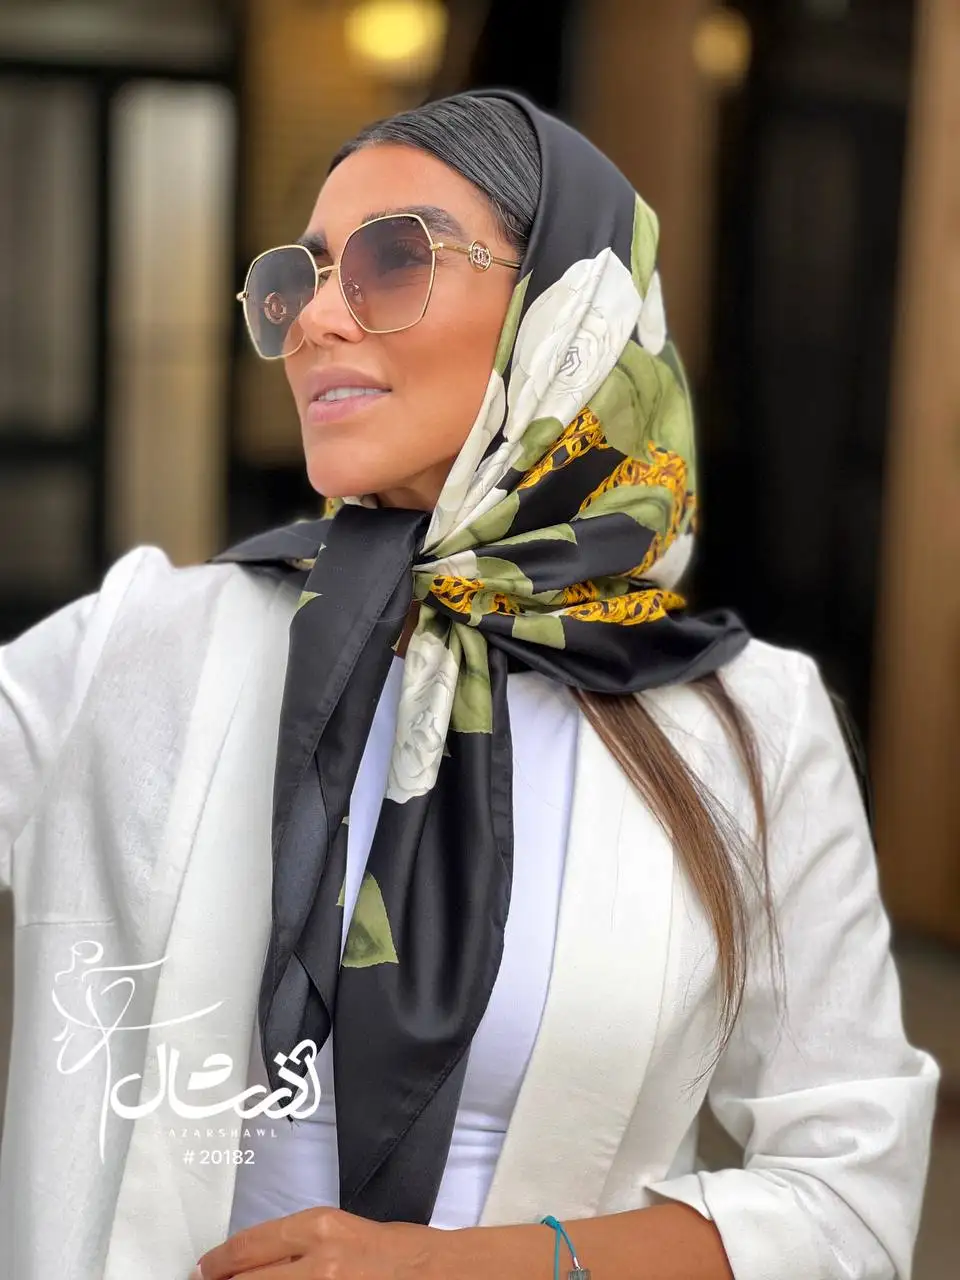 روسری قواره متوسط تویل ابریشم - فروشگاه آنلاین - آذرشال Azarshawl